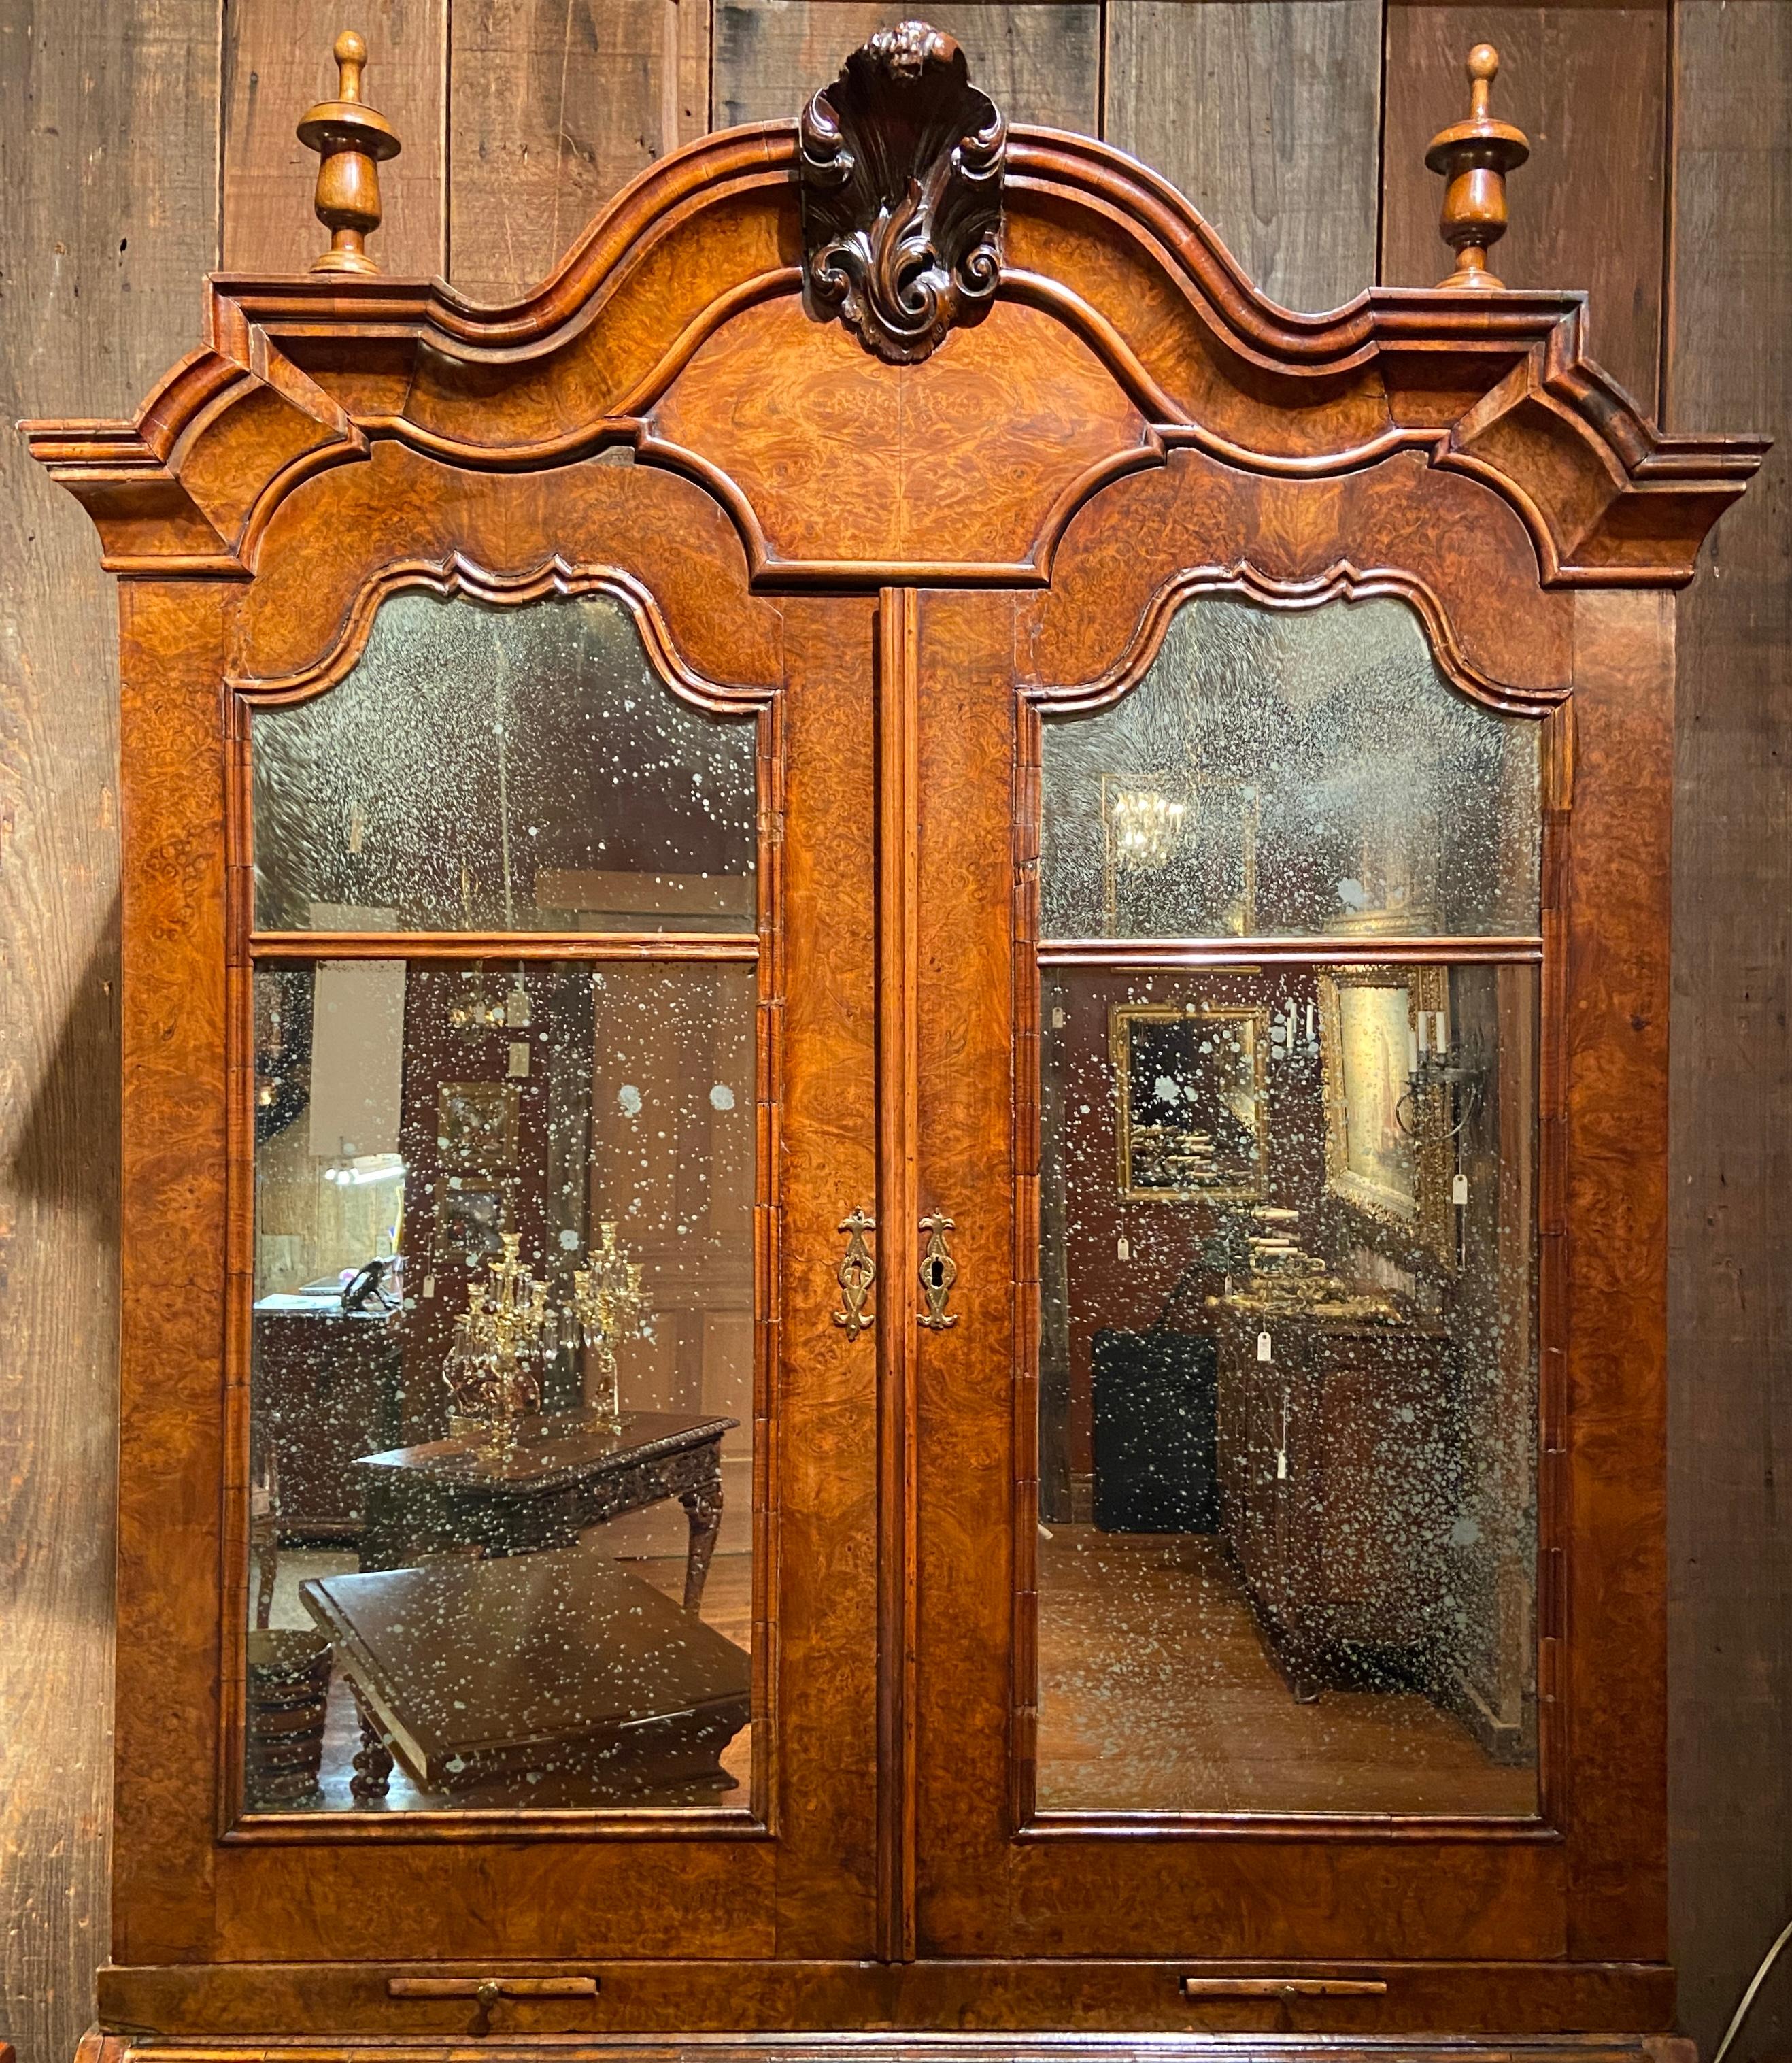 Ancienne bibliothèque secrétaire en noyer ronceux du 18ème siècle avec intérieur aménagé et miroir ancien.